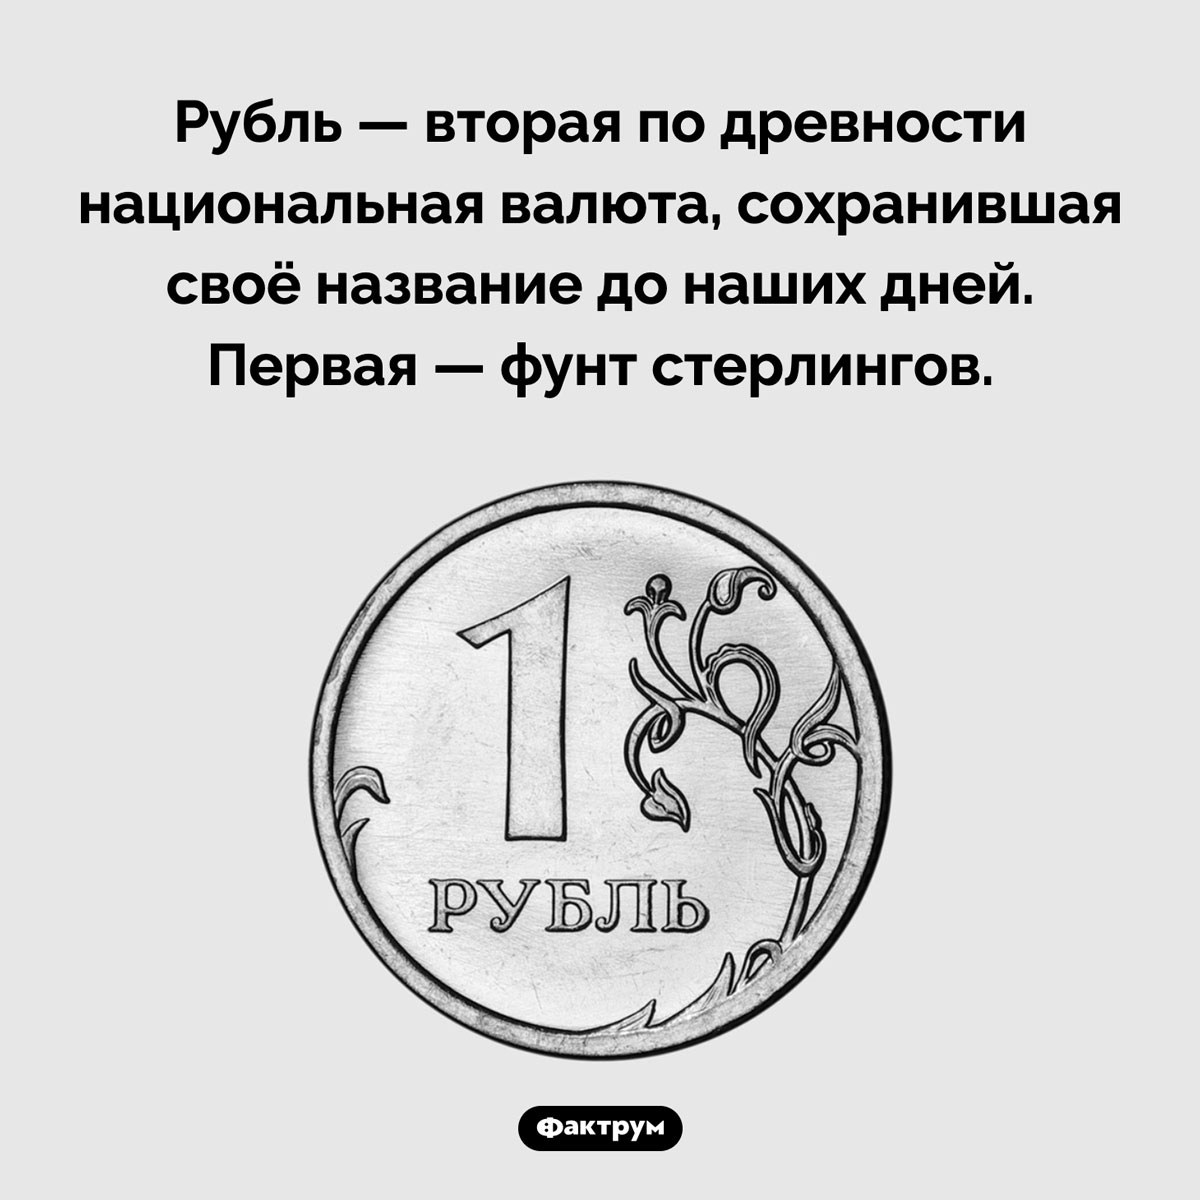 Две древнейшие валюты. Рубль — вторая по древности национальная валюта, сохранившая своё название до наших дней. Первая — фунт стерлингов.